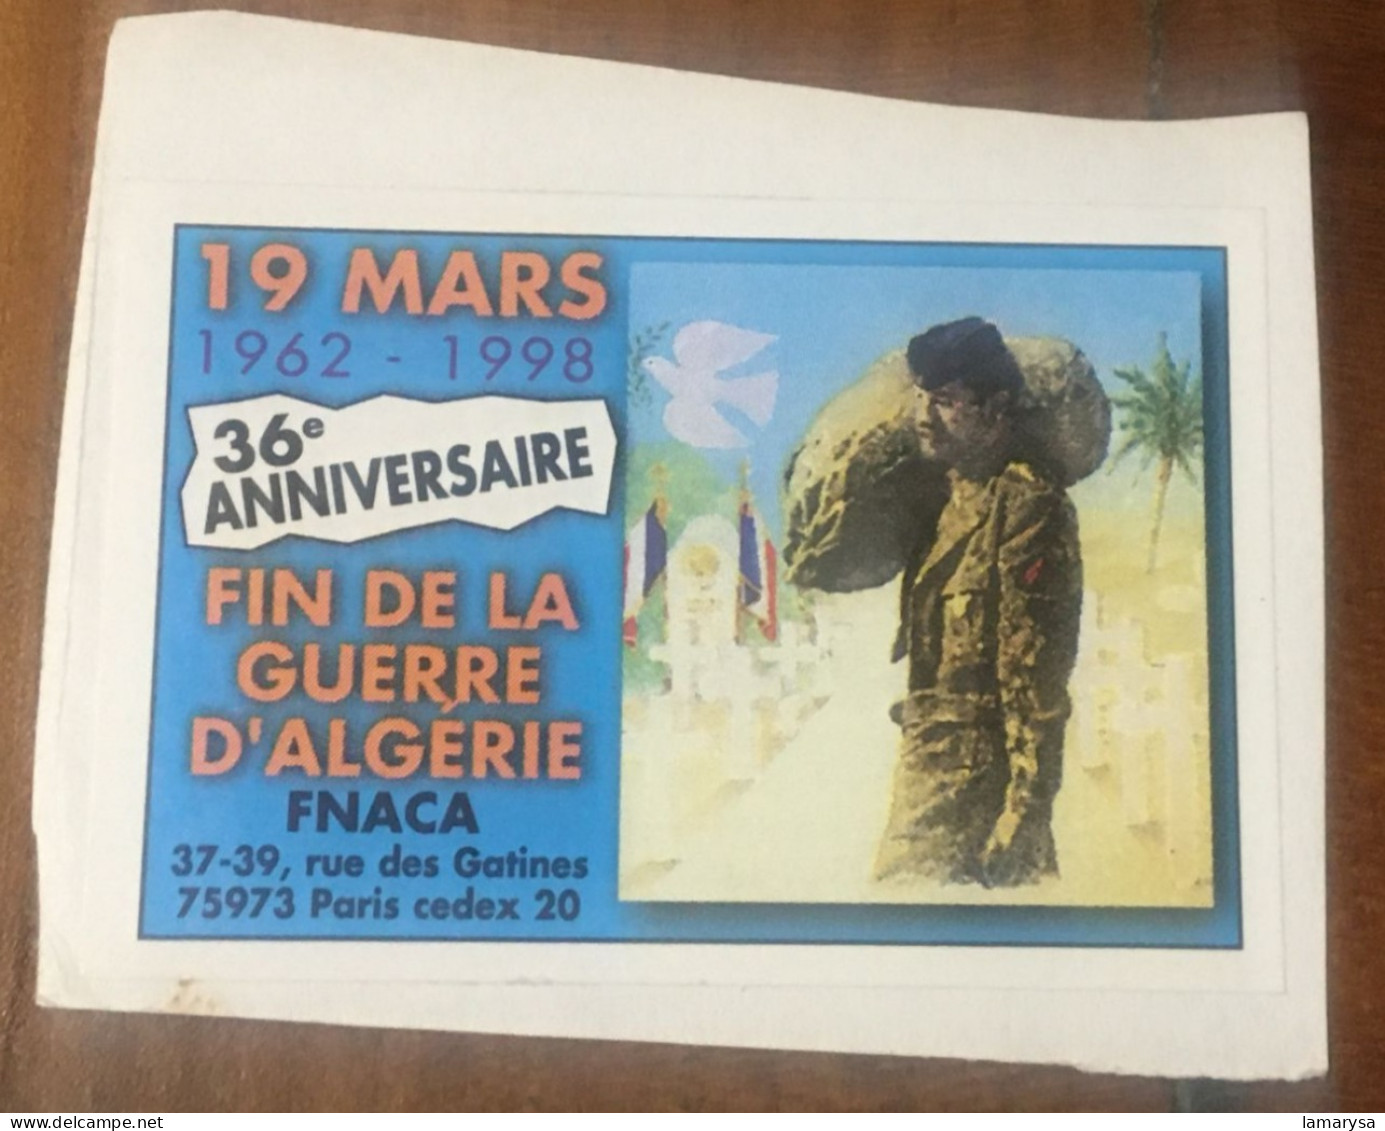 Rare Fin De La Guerre D'Algérie-FNACA-35°Anniversaire 19 Mars 62-Vignette-Erinnophilie,Timbre,stamp,Sticker-Bollo-Vineta - Vignettes Militaires